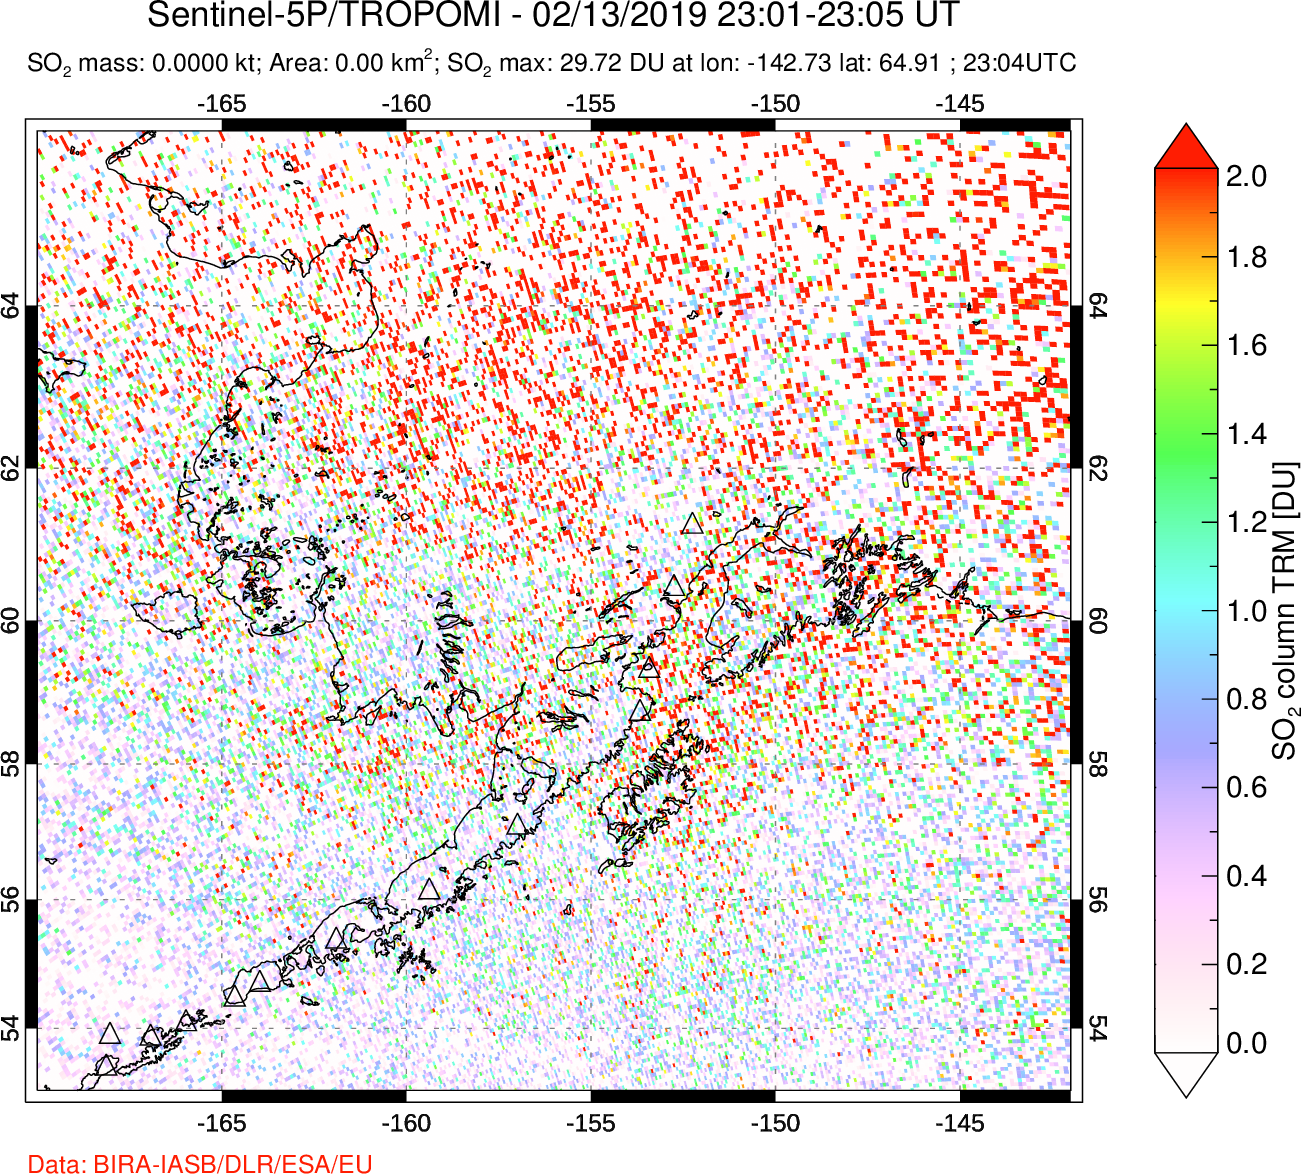 A sulfur dioxide image over Alaska, USA on Feb 13, 2019.